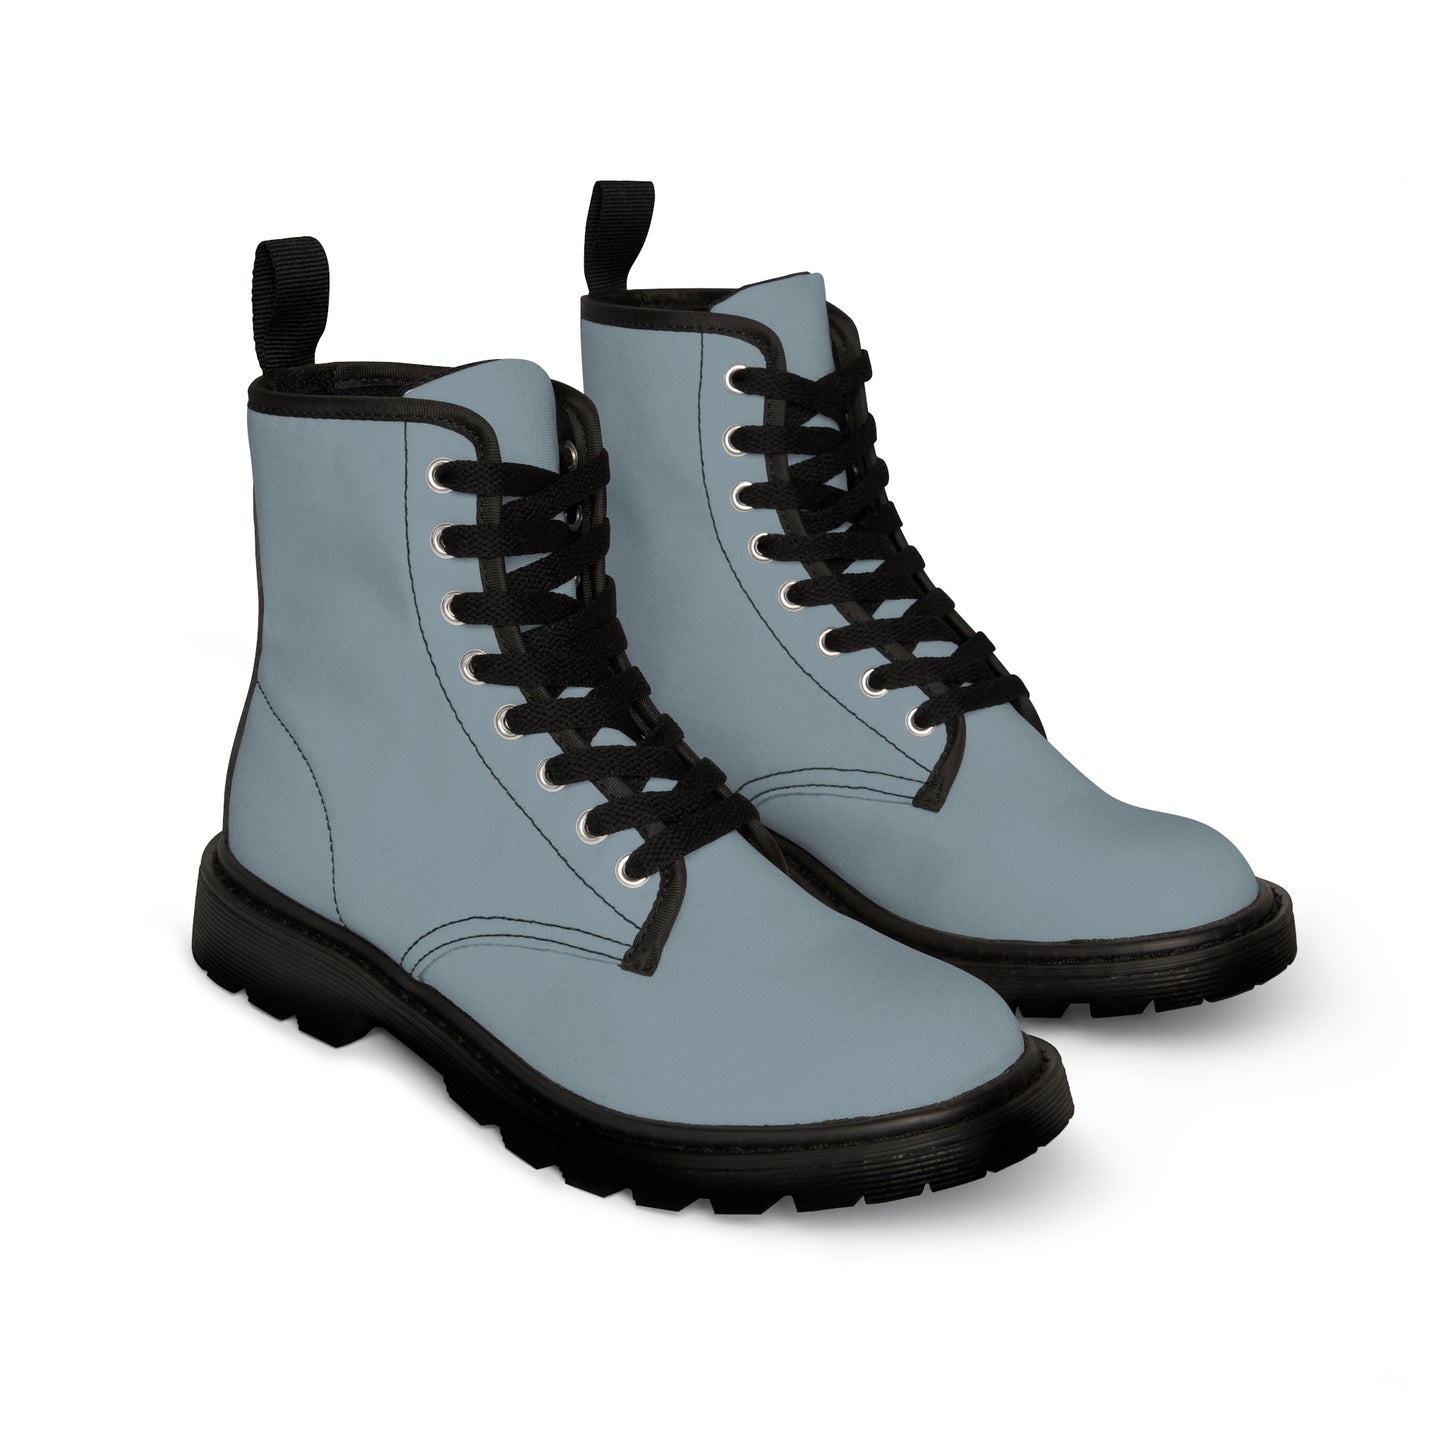 Men's Canvas Boots - Storm Gray US 10.5 Black sole